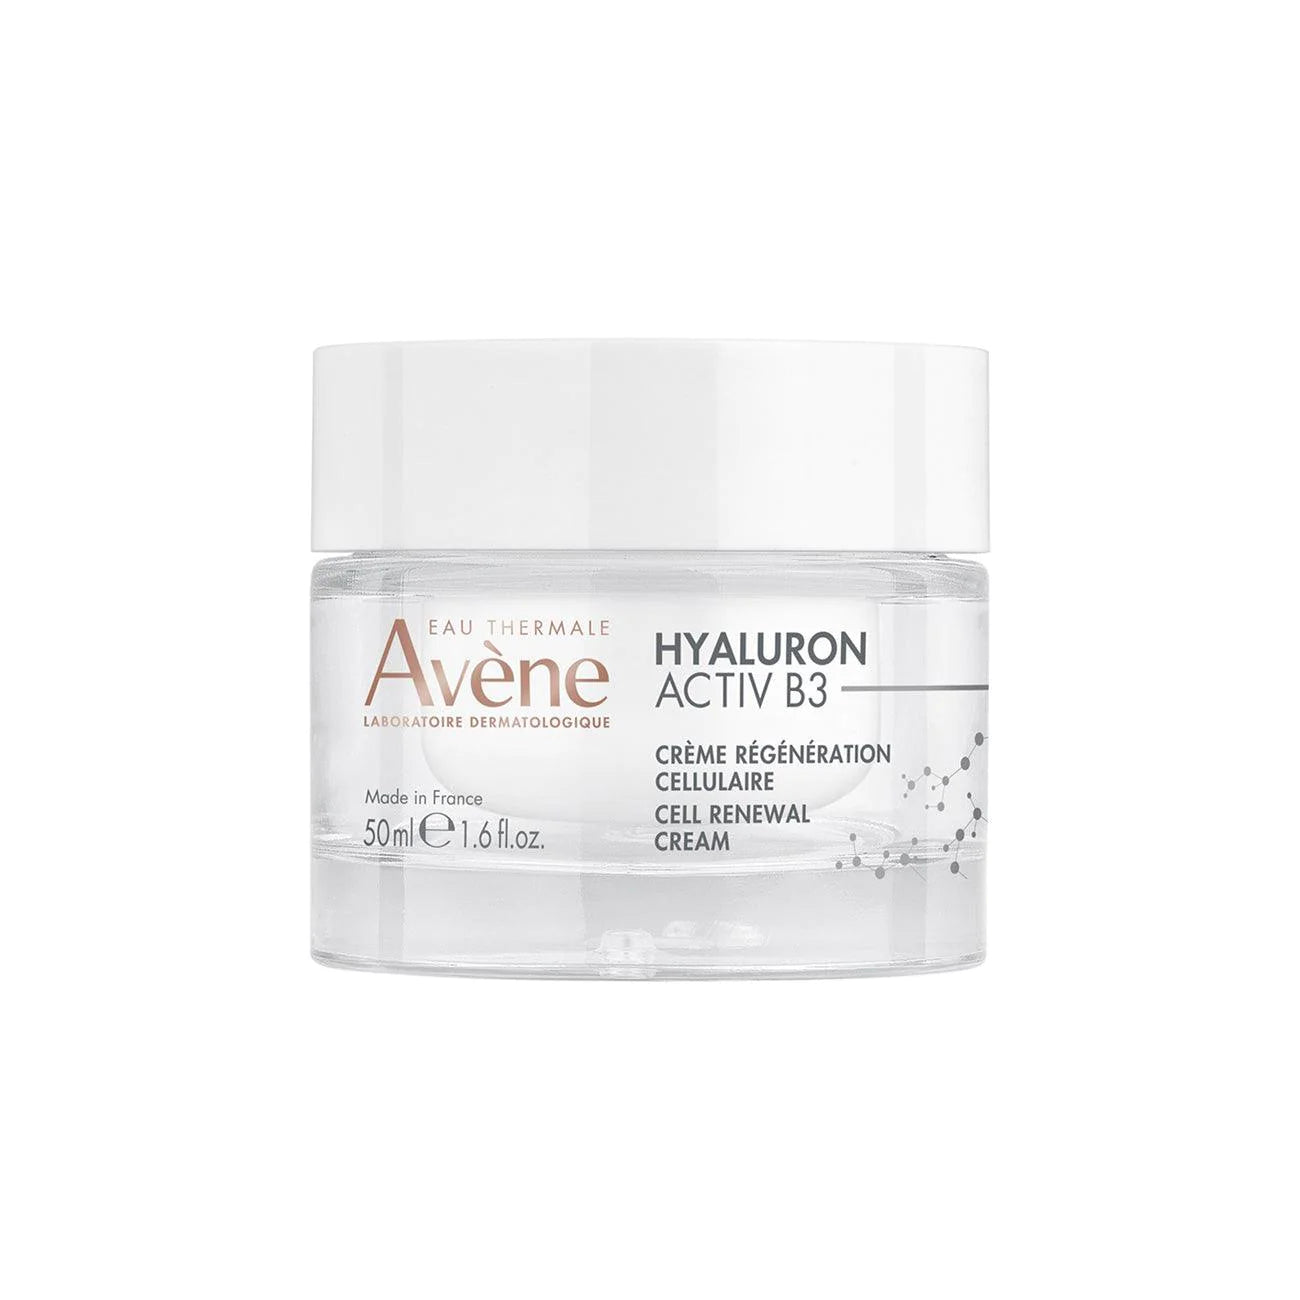 AVENE Hyaluron ACTIV B3 Cell Renewal cream 50ml